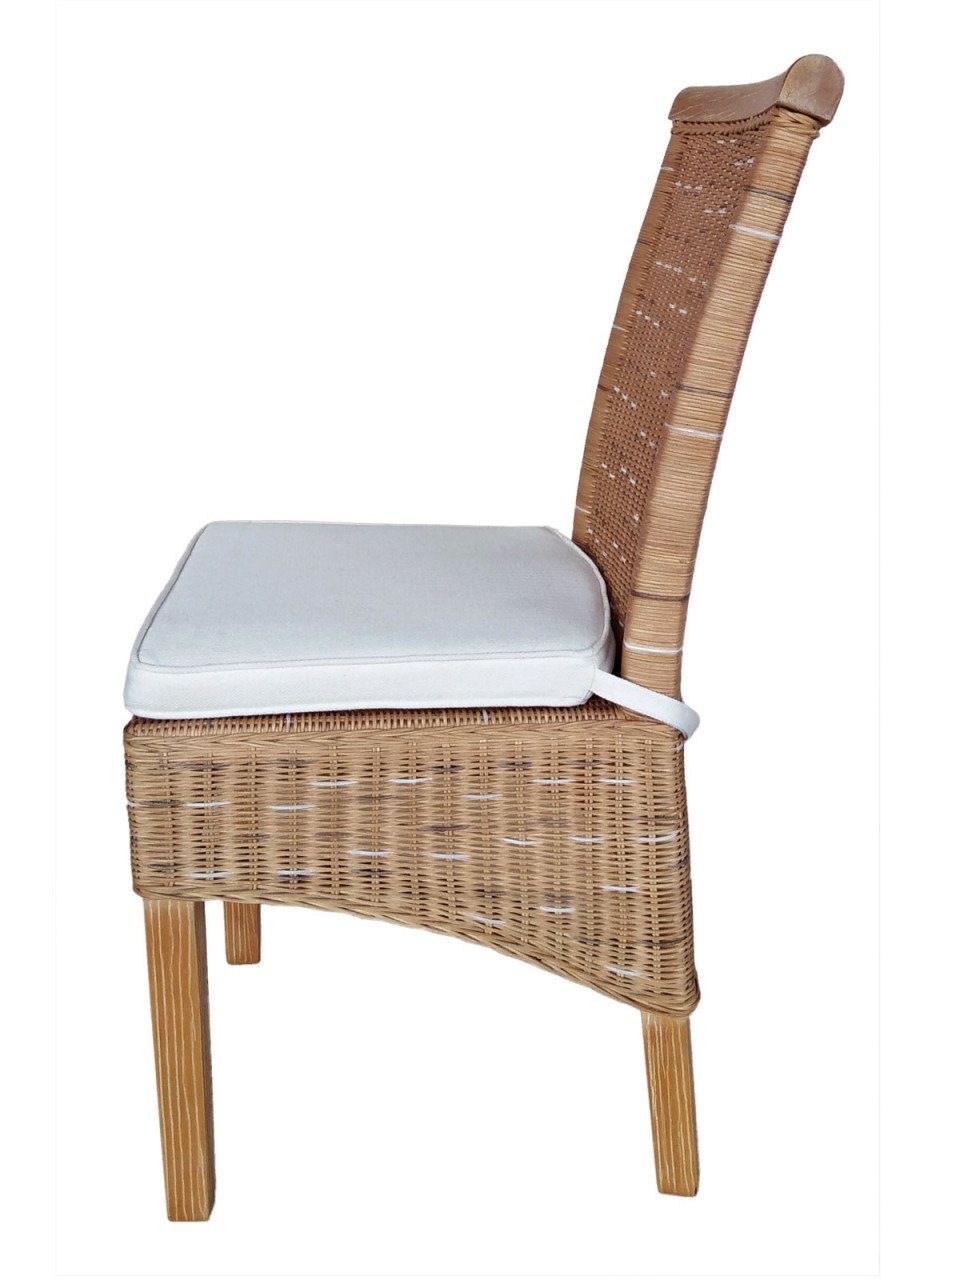 soma Sessel Soma Esszimmer-Stühle Set Stuhl oder Rattanstühle weiß Stück Sessel S, 6 Sitzmöbel braun Perth Sitzplatz